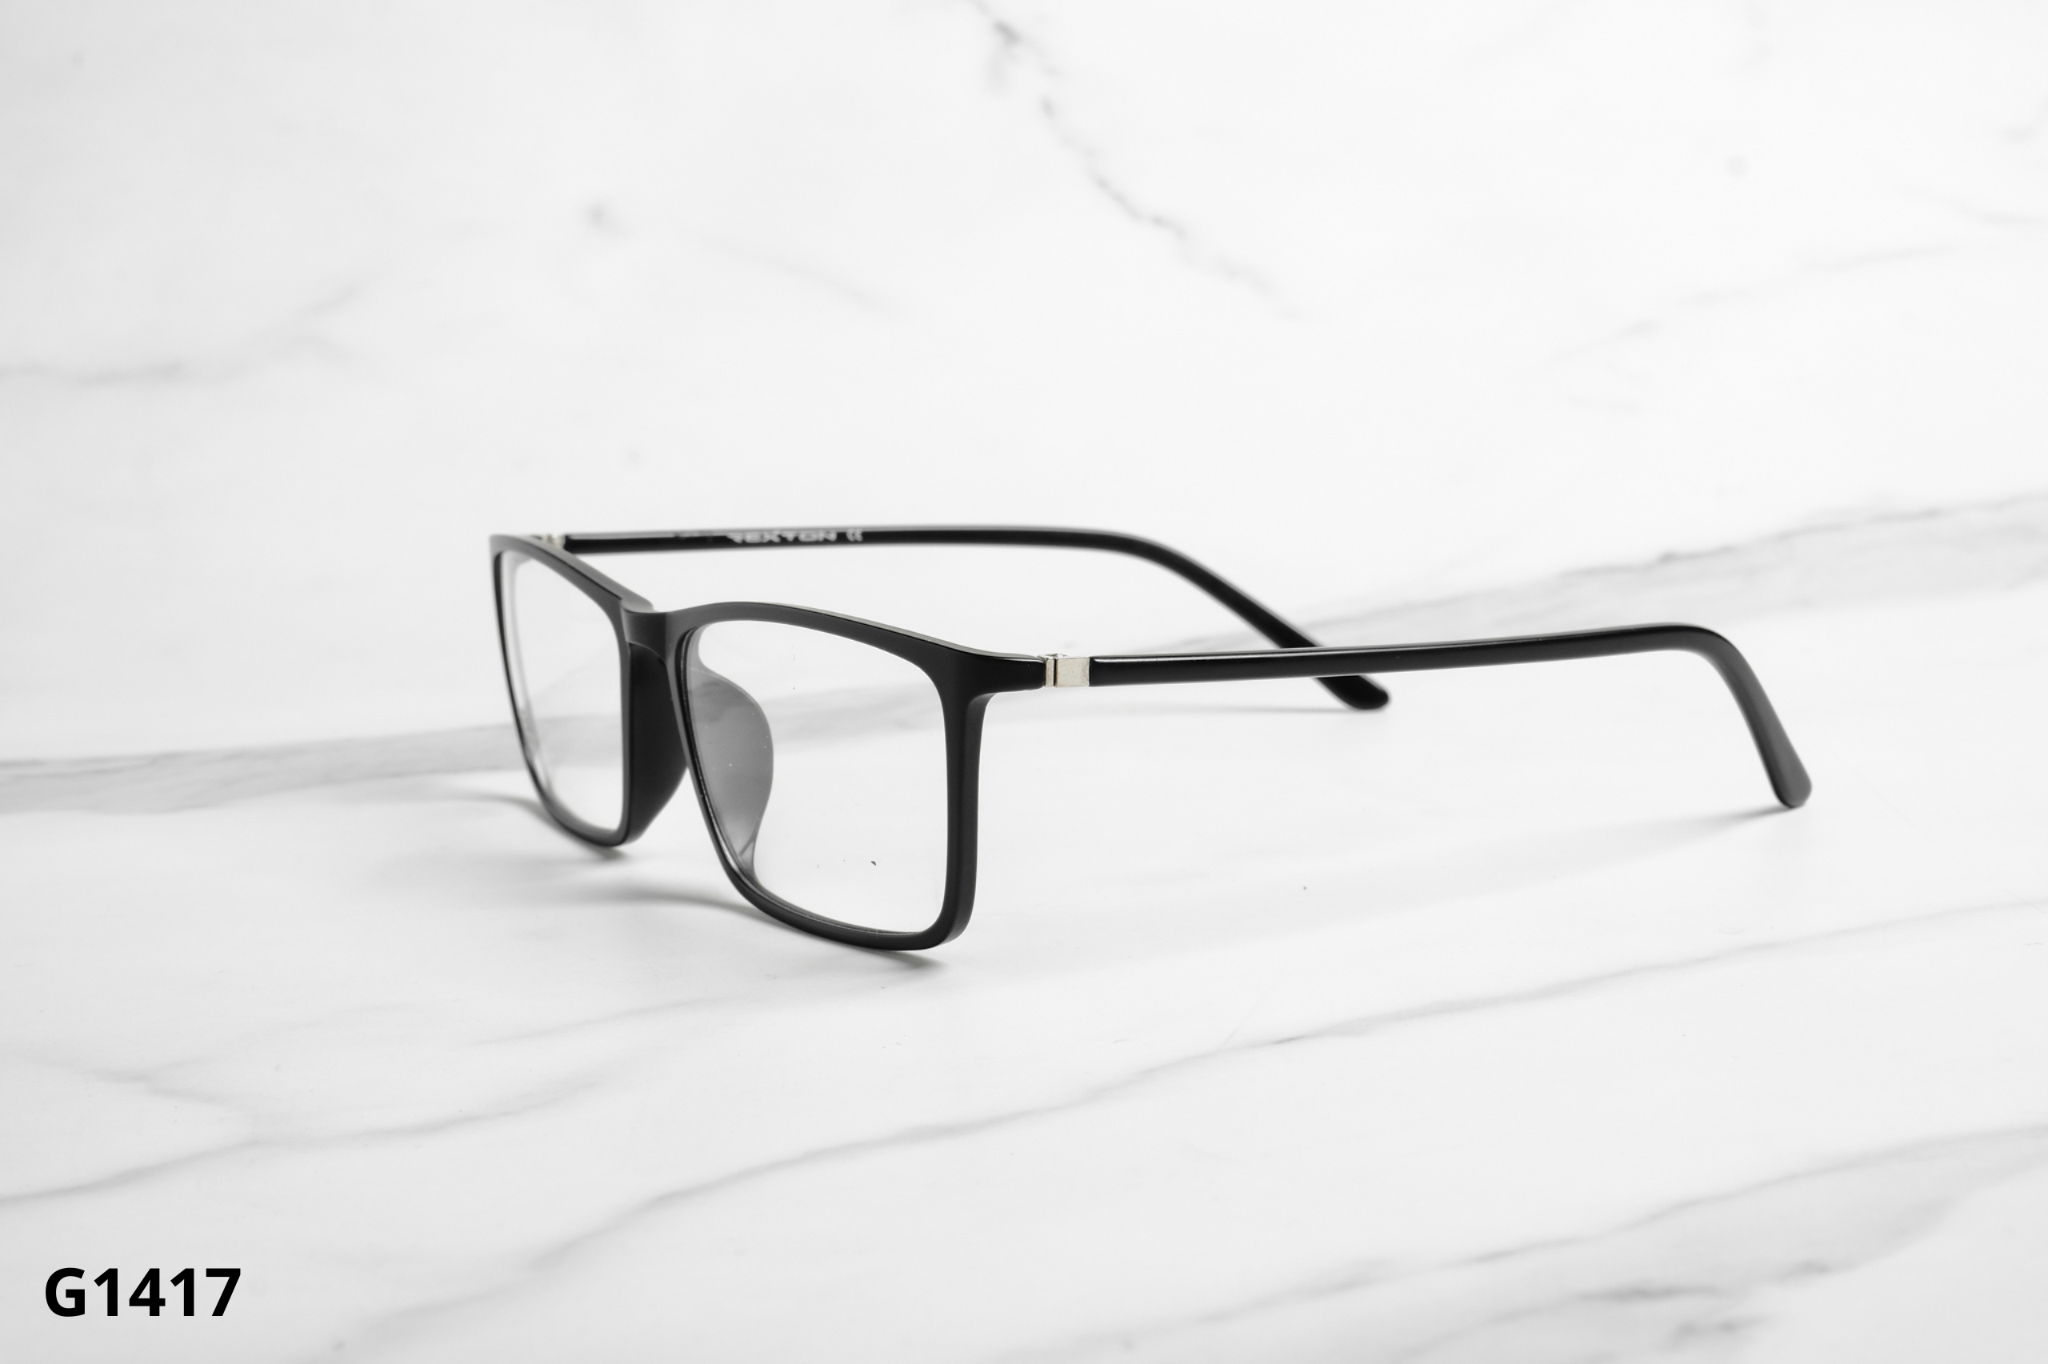  Rex-ton Eyewear - Glasses - G1417 